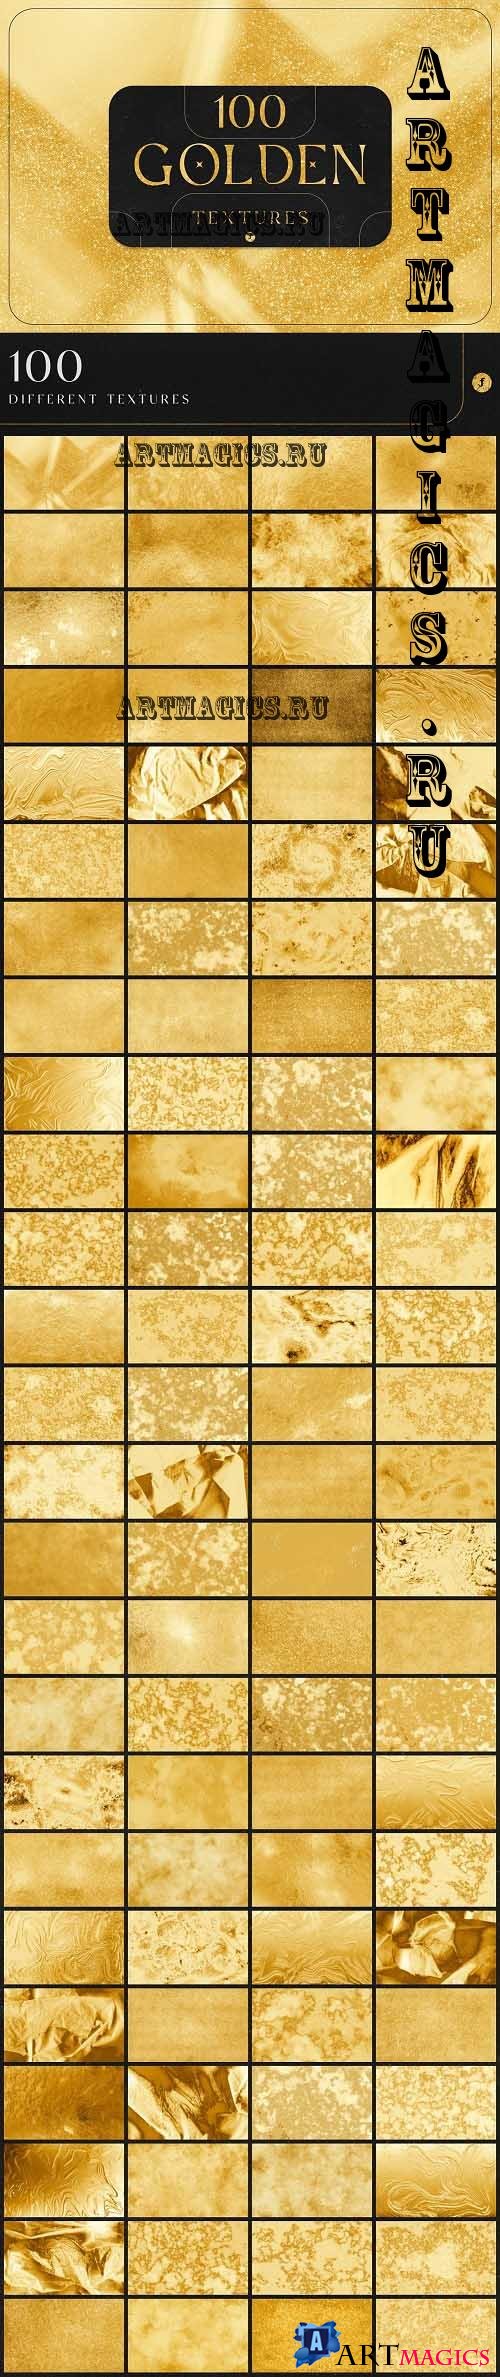 100 Golden Textures - 7024869